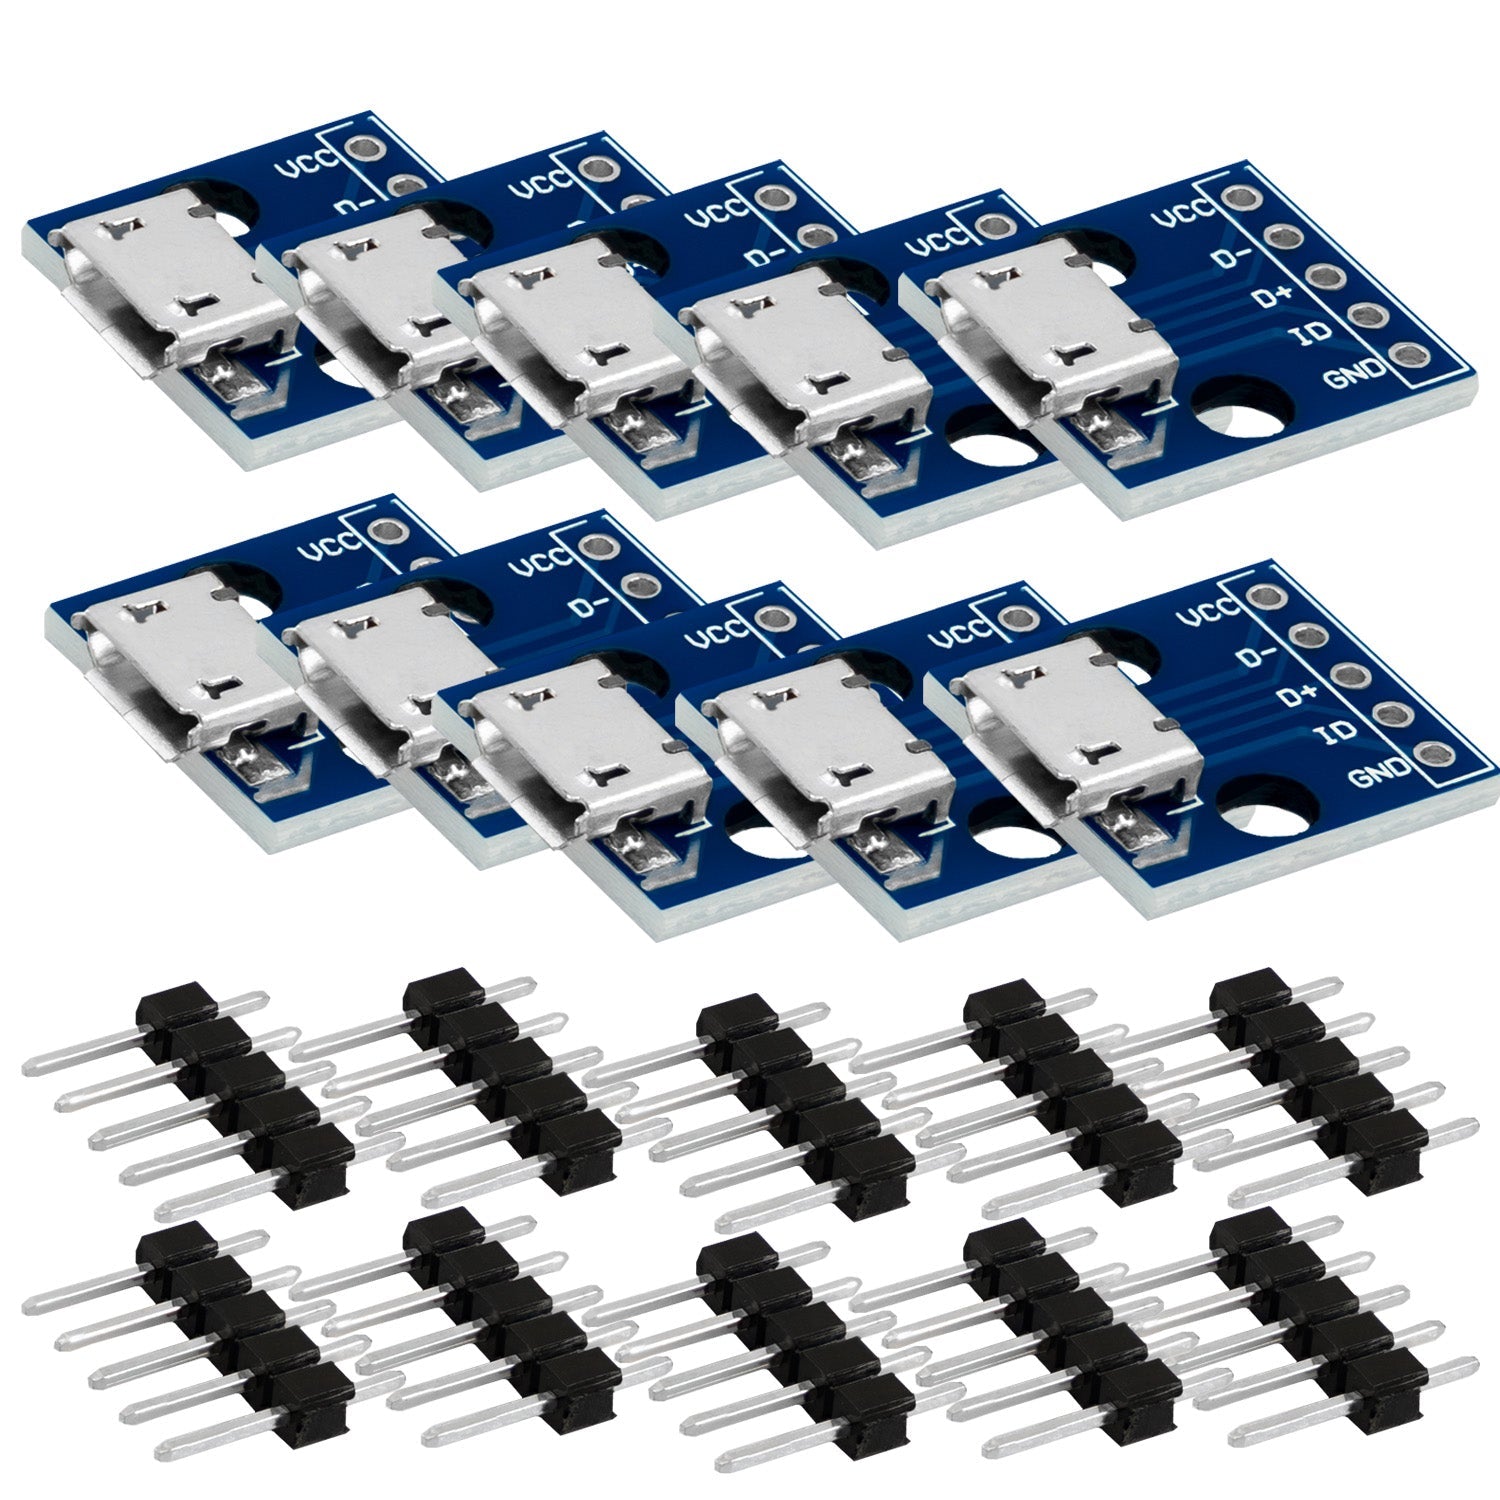 Micro-USB-Anschlussbuchse | USB-Stromversorgungsschnittstelle |  5V-Strommodul | kompatibel mit Arduino